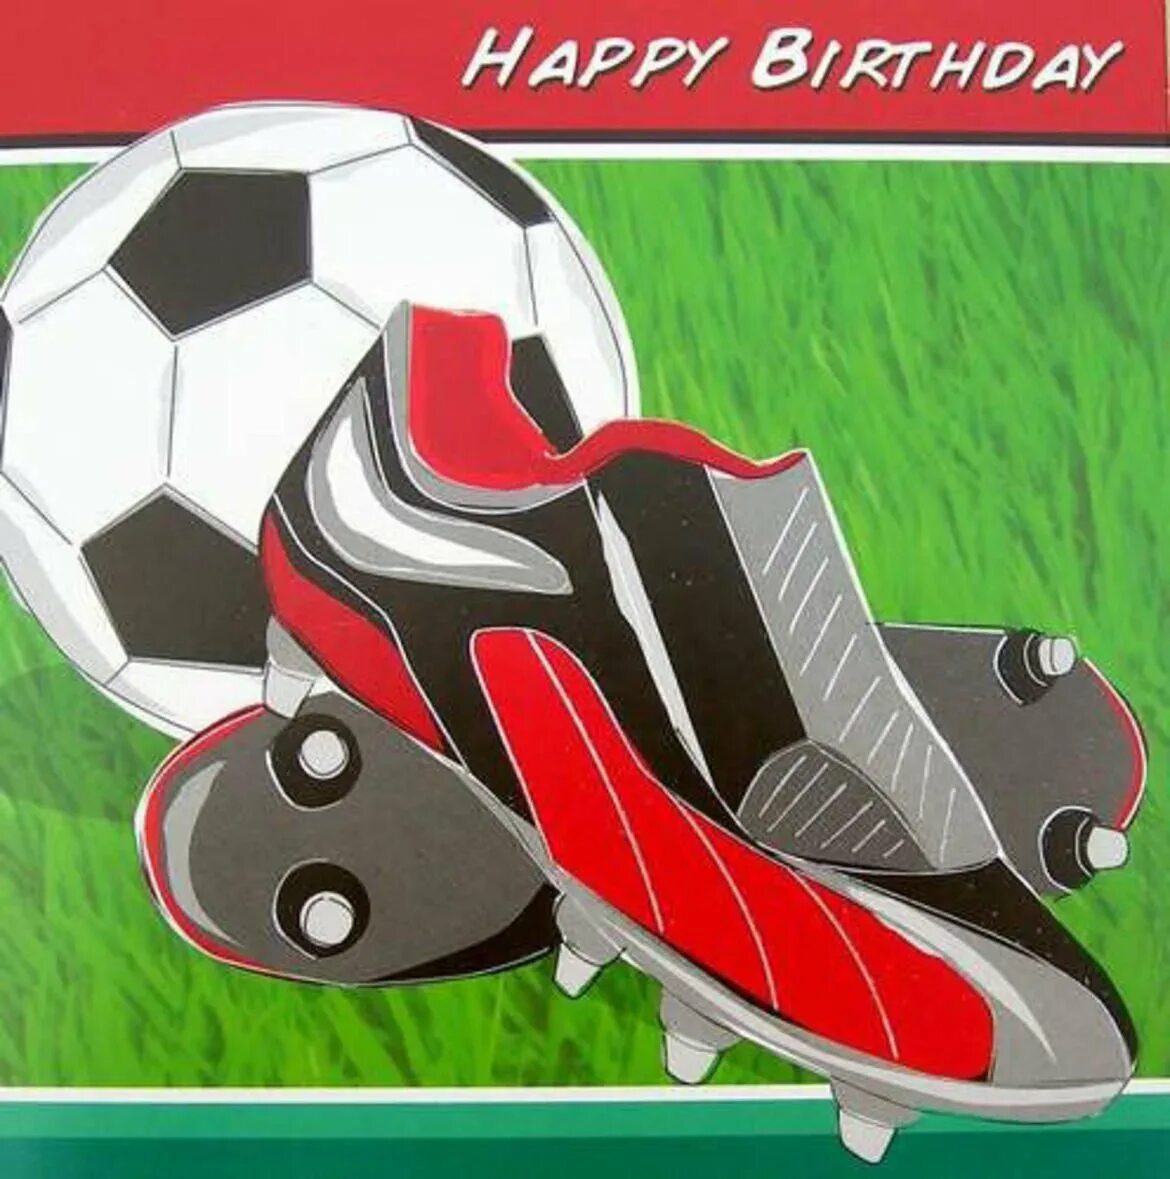 С днём рождения футболисту. Футбольные открытки с днем рождения. Открытка футболисту. Футбольное поздравление с днем рождения.